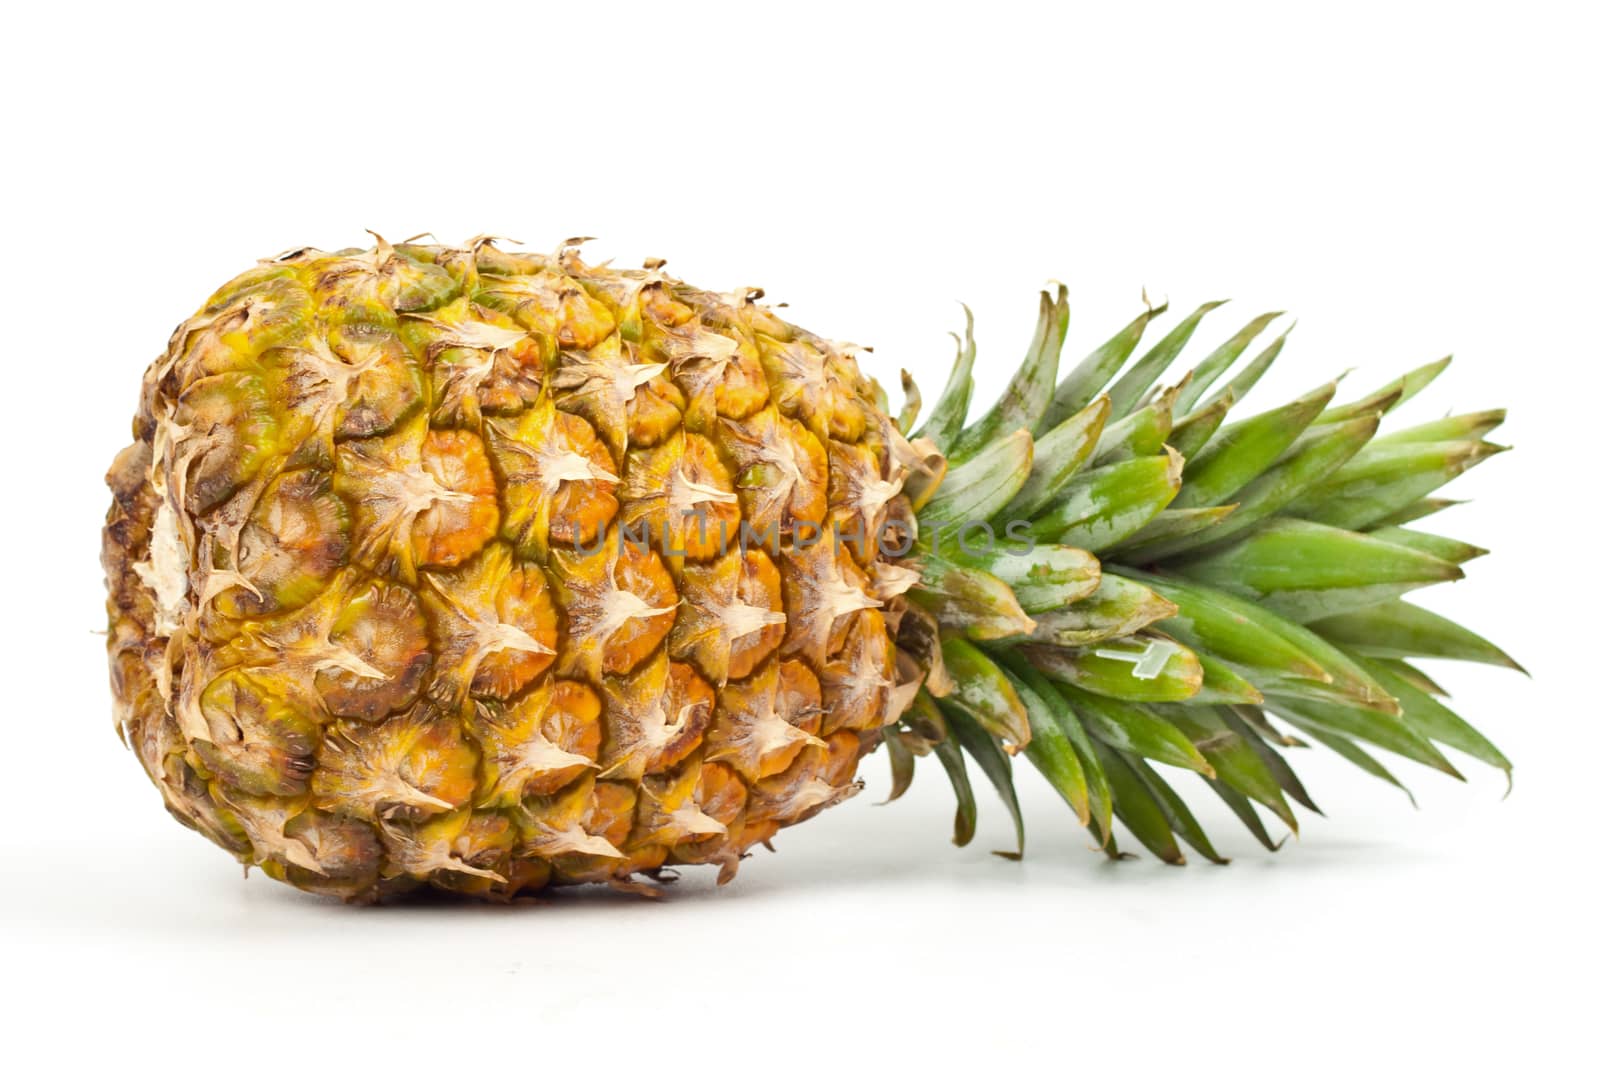 ripe pineapple by aziatik13